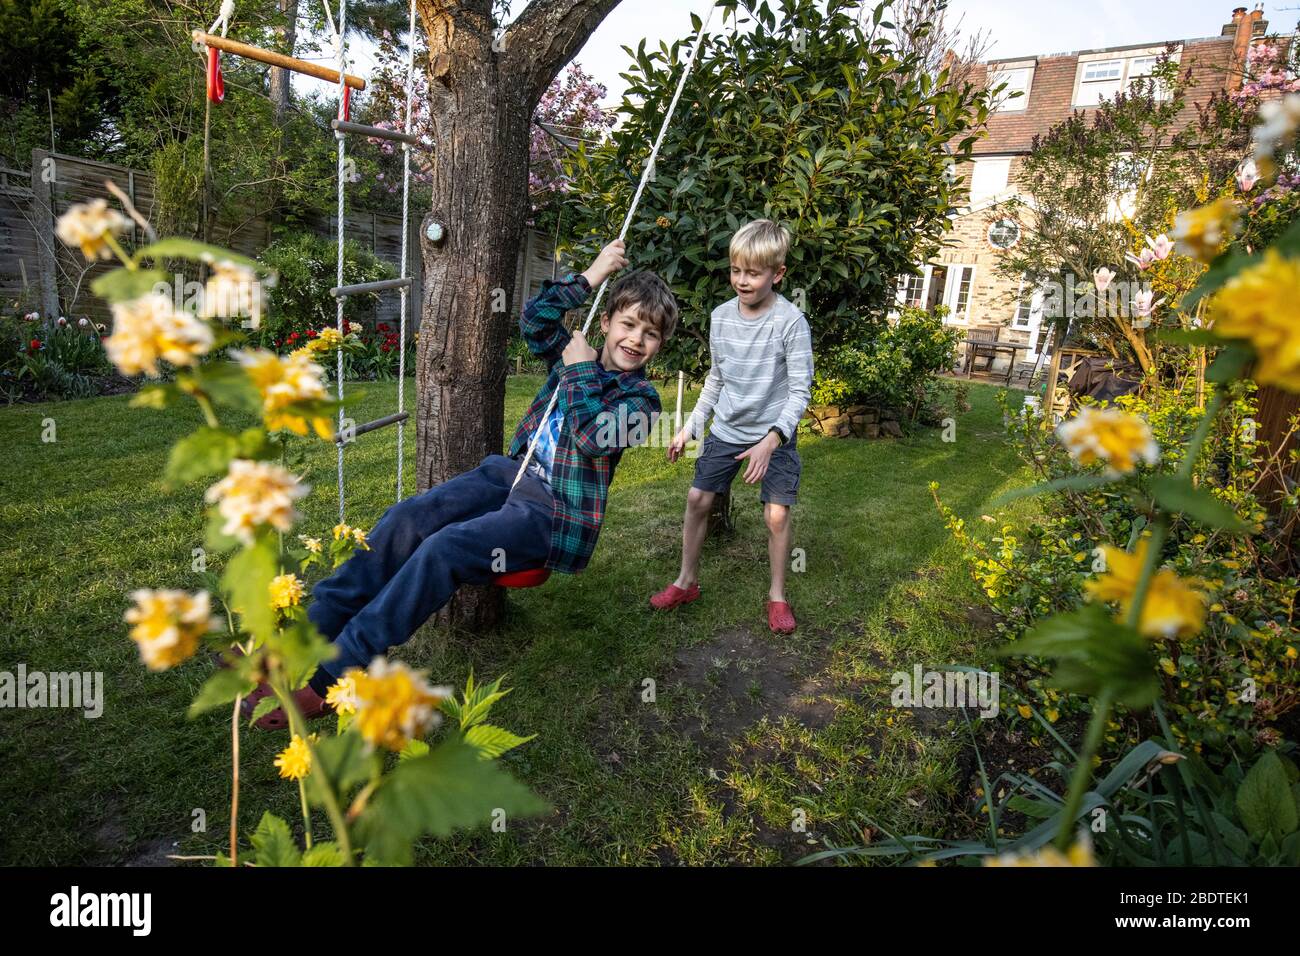 Zwei junge Brüder im Alter von 6 und 9 Jahren spielen auf einer Seilleiter und Seilschaukel in ihrem Garten, London, England, Großbritannien Stockfoto